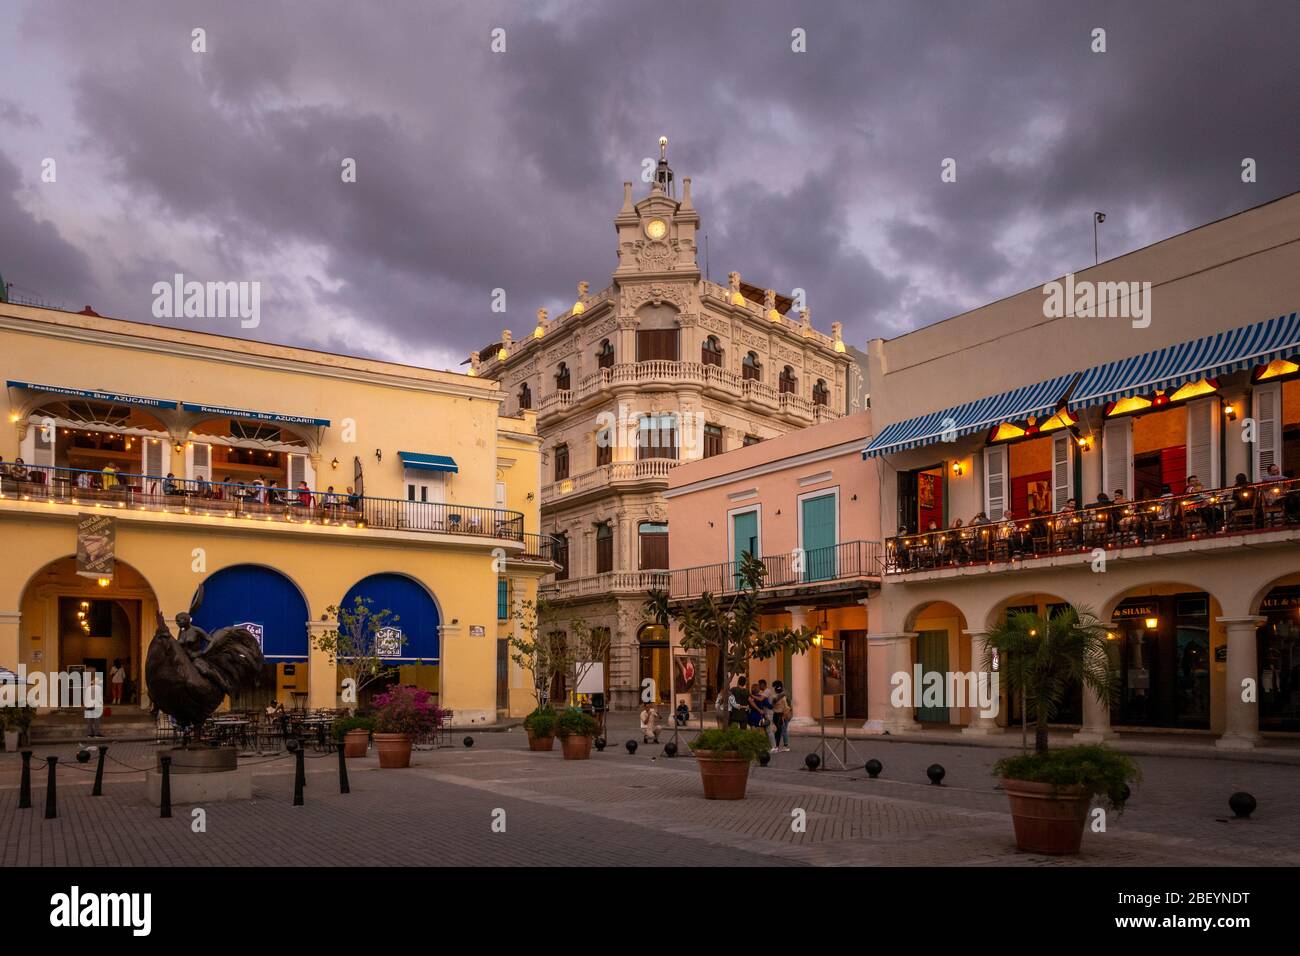 Touristen sitzen am frühen Abend und genießen das Essen in Restaurants und Cafés auf der Plaza Vieja, Havanna Altstadt, Kuba Stockfoto